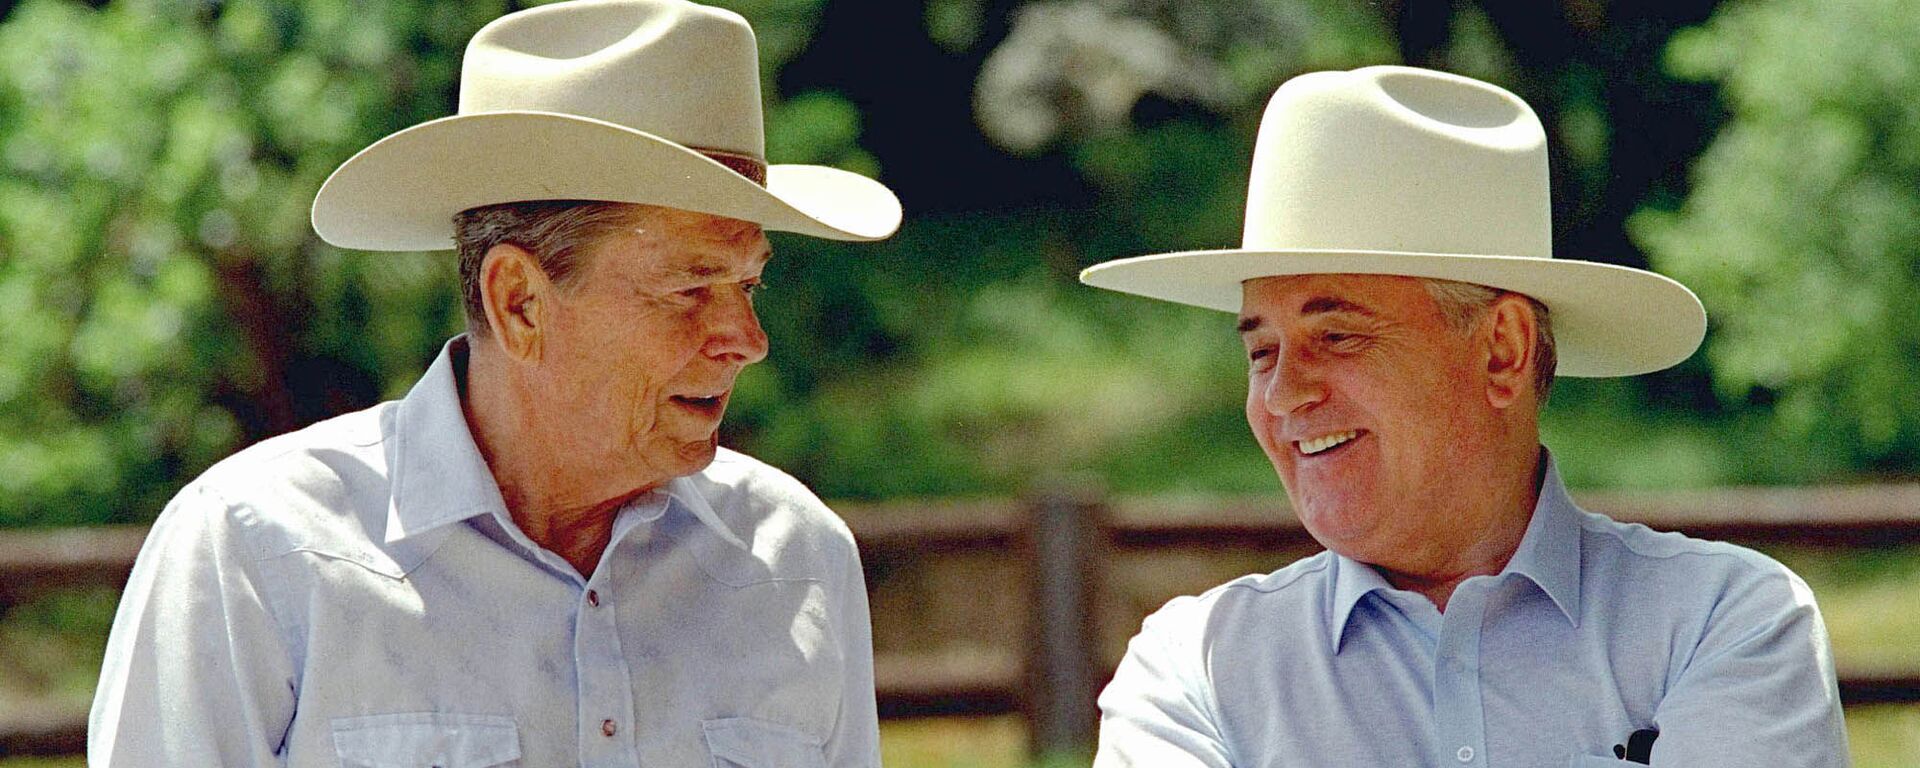 Горбачев и Рейган на ранчо в США в 1992 году - Sputnik Lietuva, 1920, 02.03.2021